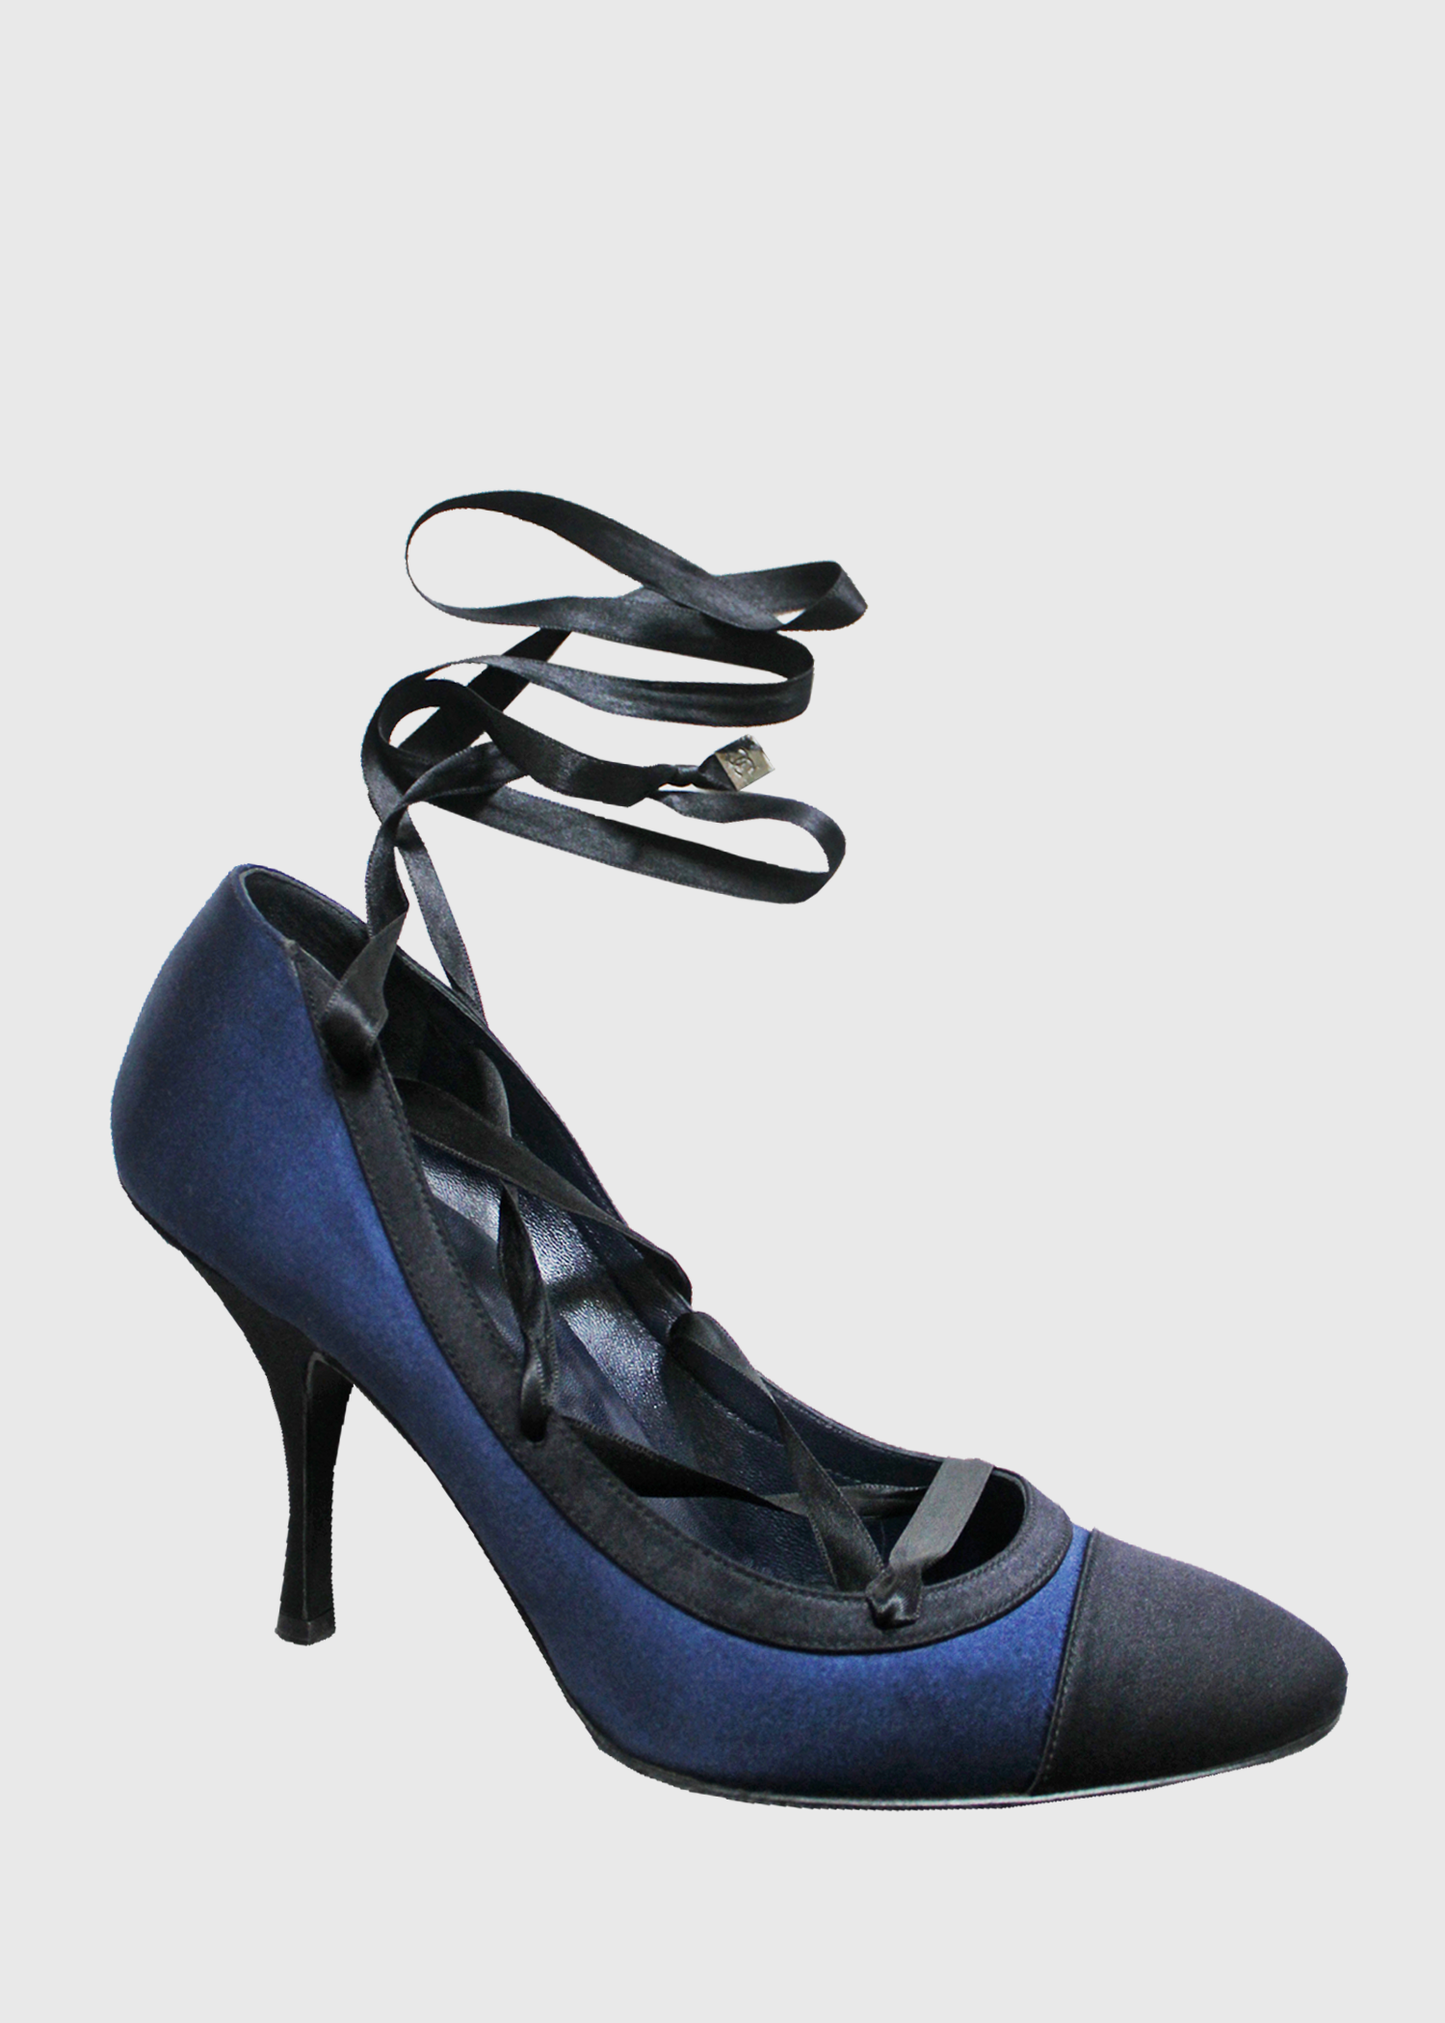 Chanel Satin Shoes - Ruby Lane